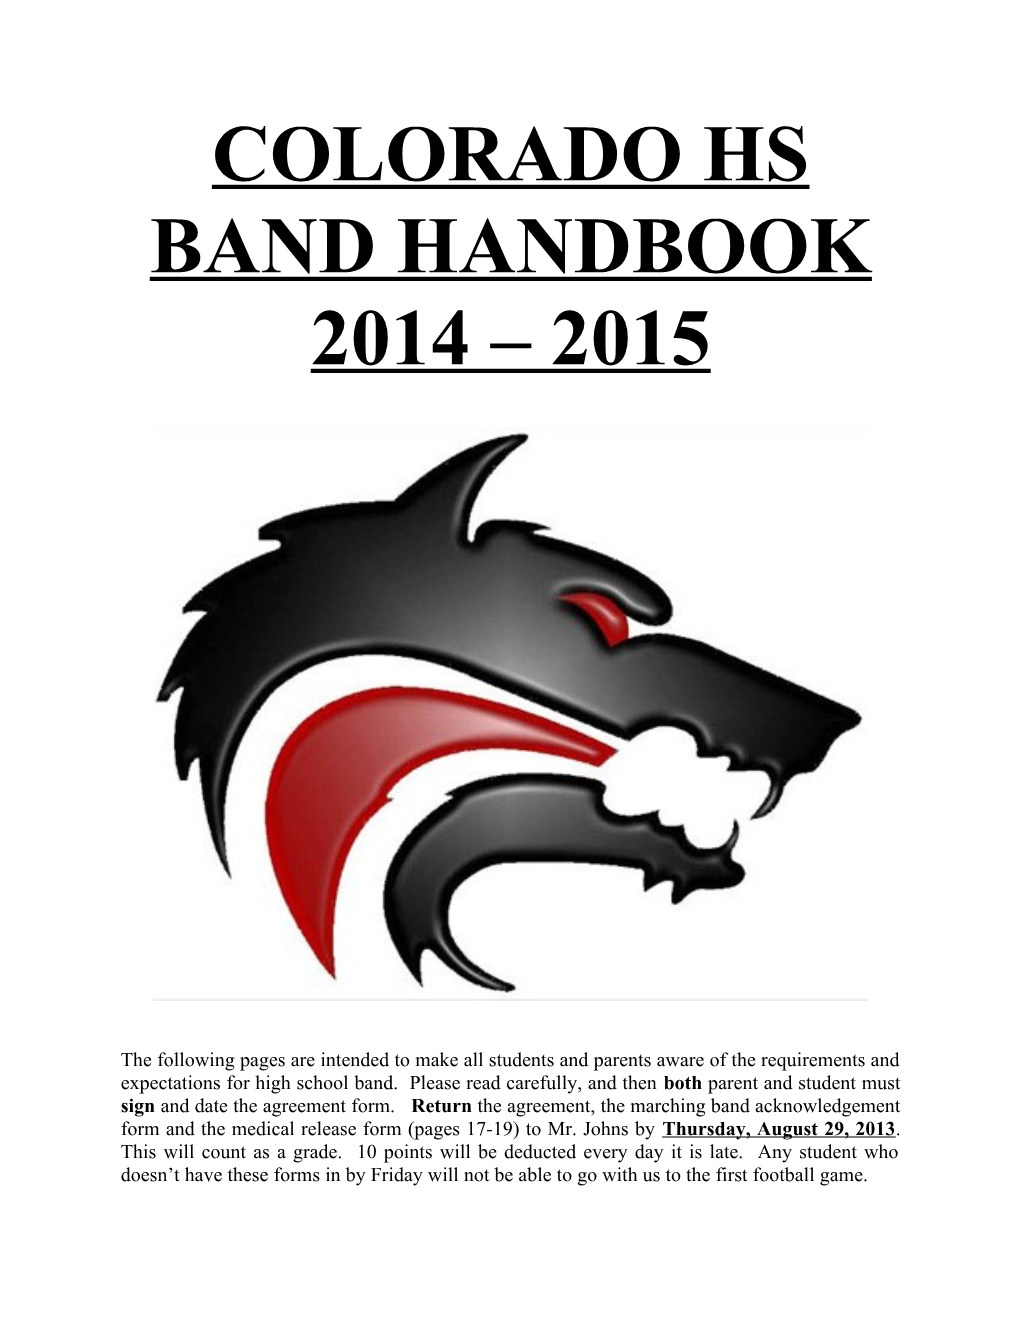 Colorado Hs Band Handbook